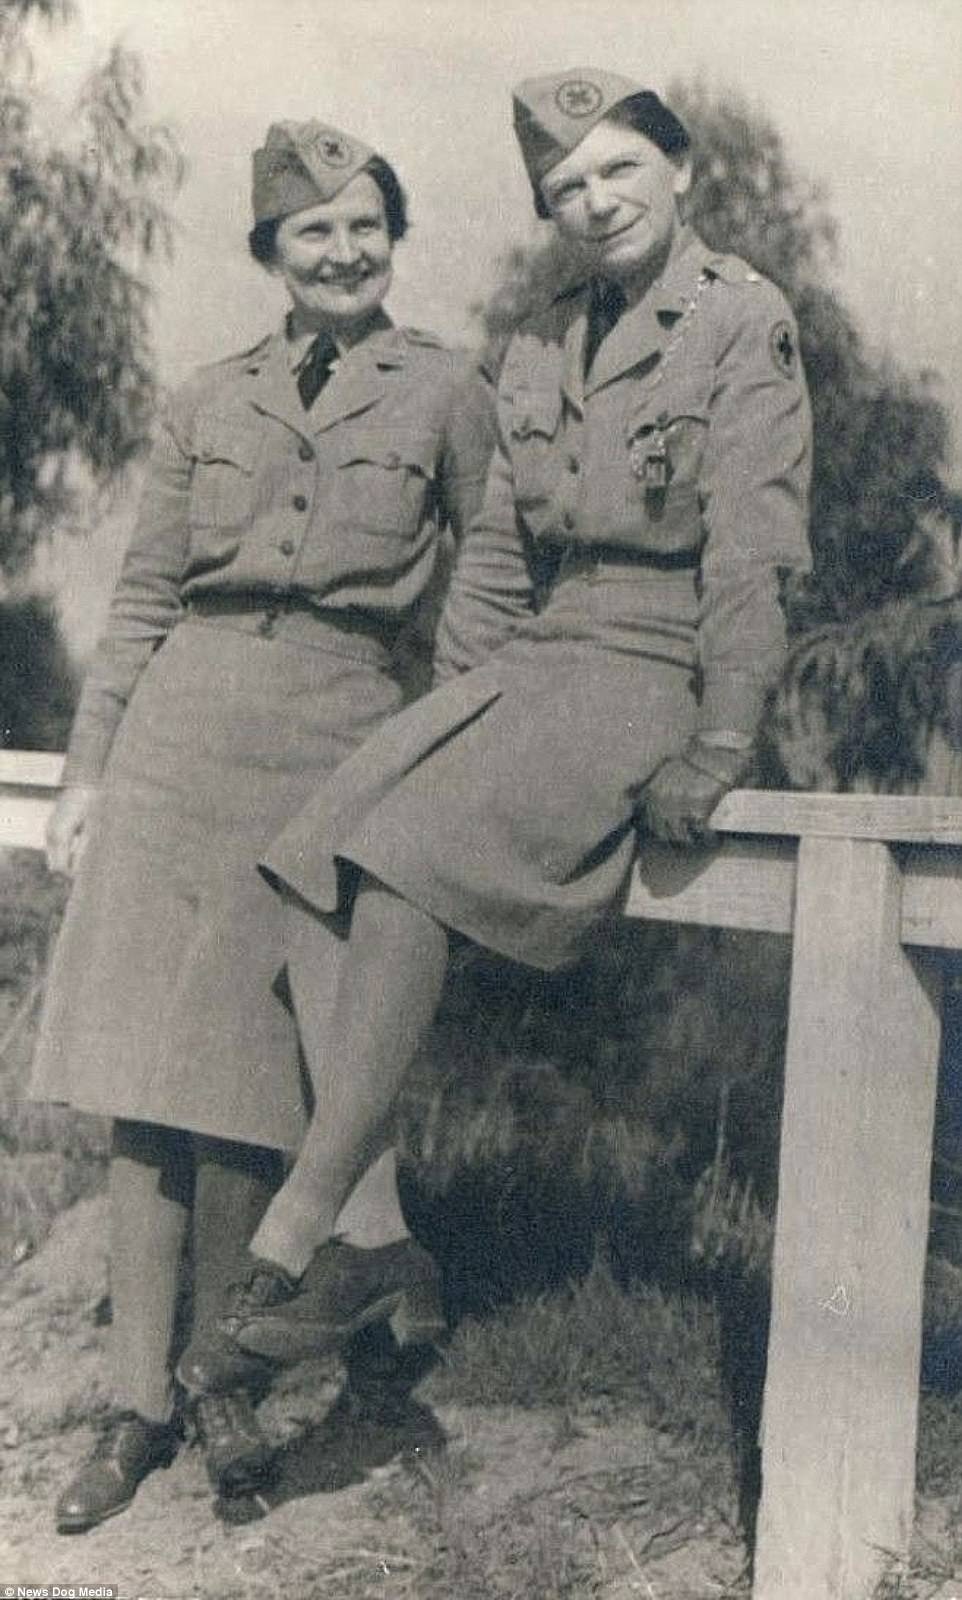   Dorothy Putnam và Lois Mercer đã chụp lại bức ảnh này để đánh dấu thời điểm họ bắt đầu hẹn hò vào những năm 1930.  